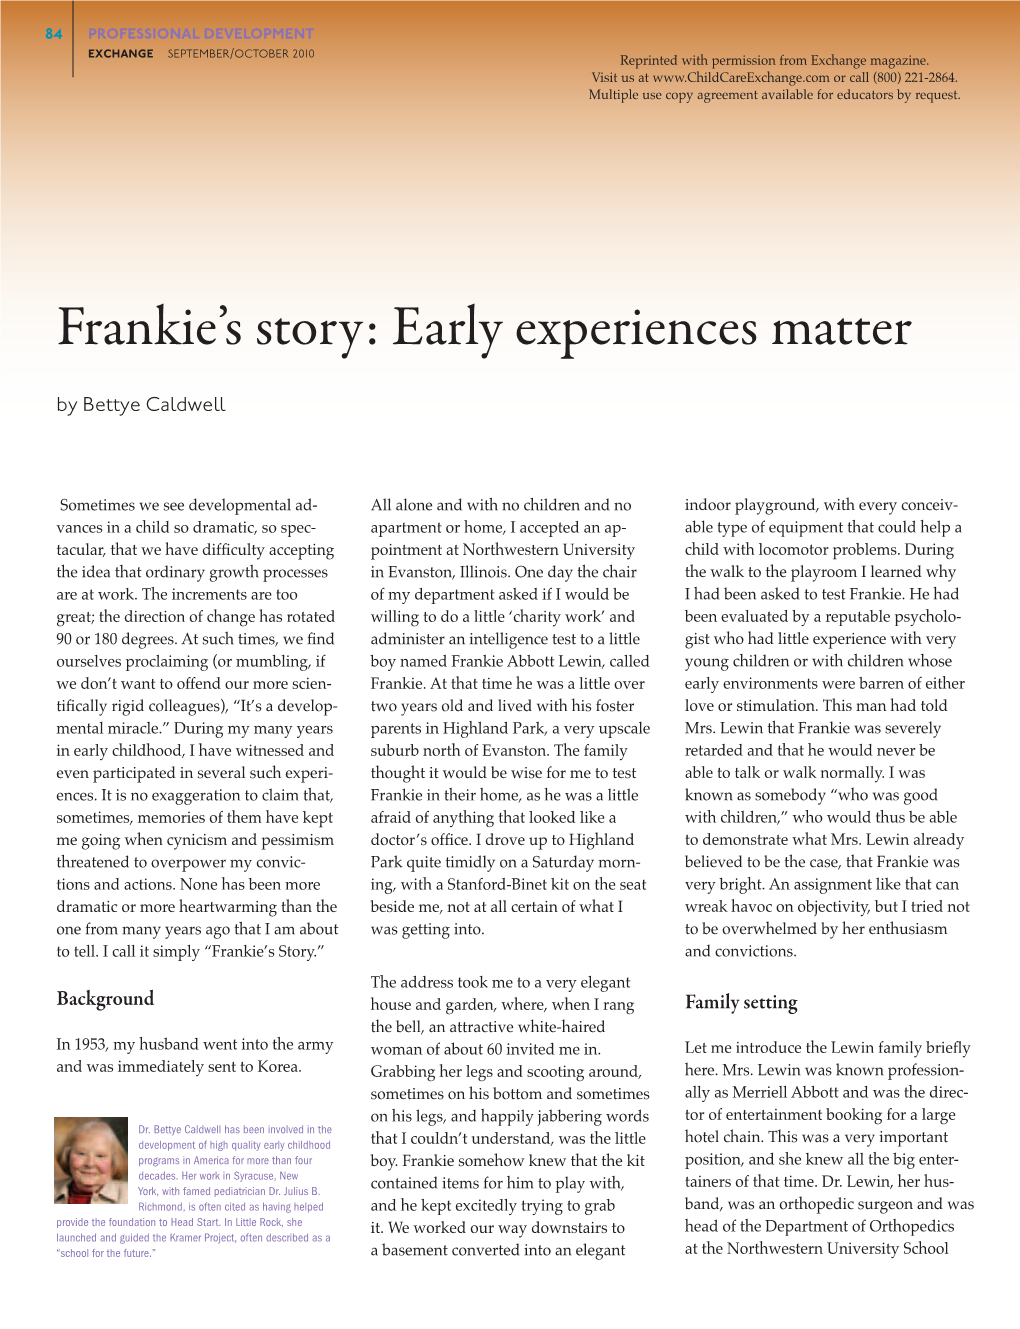 Frankie's Story